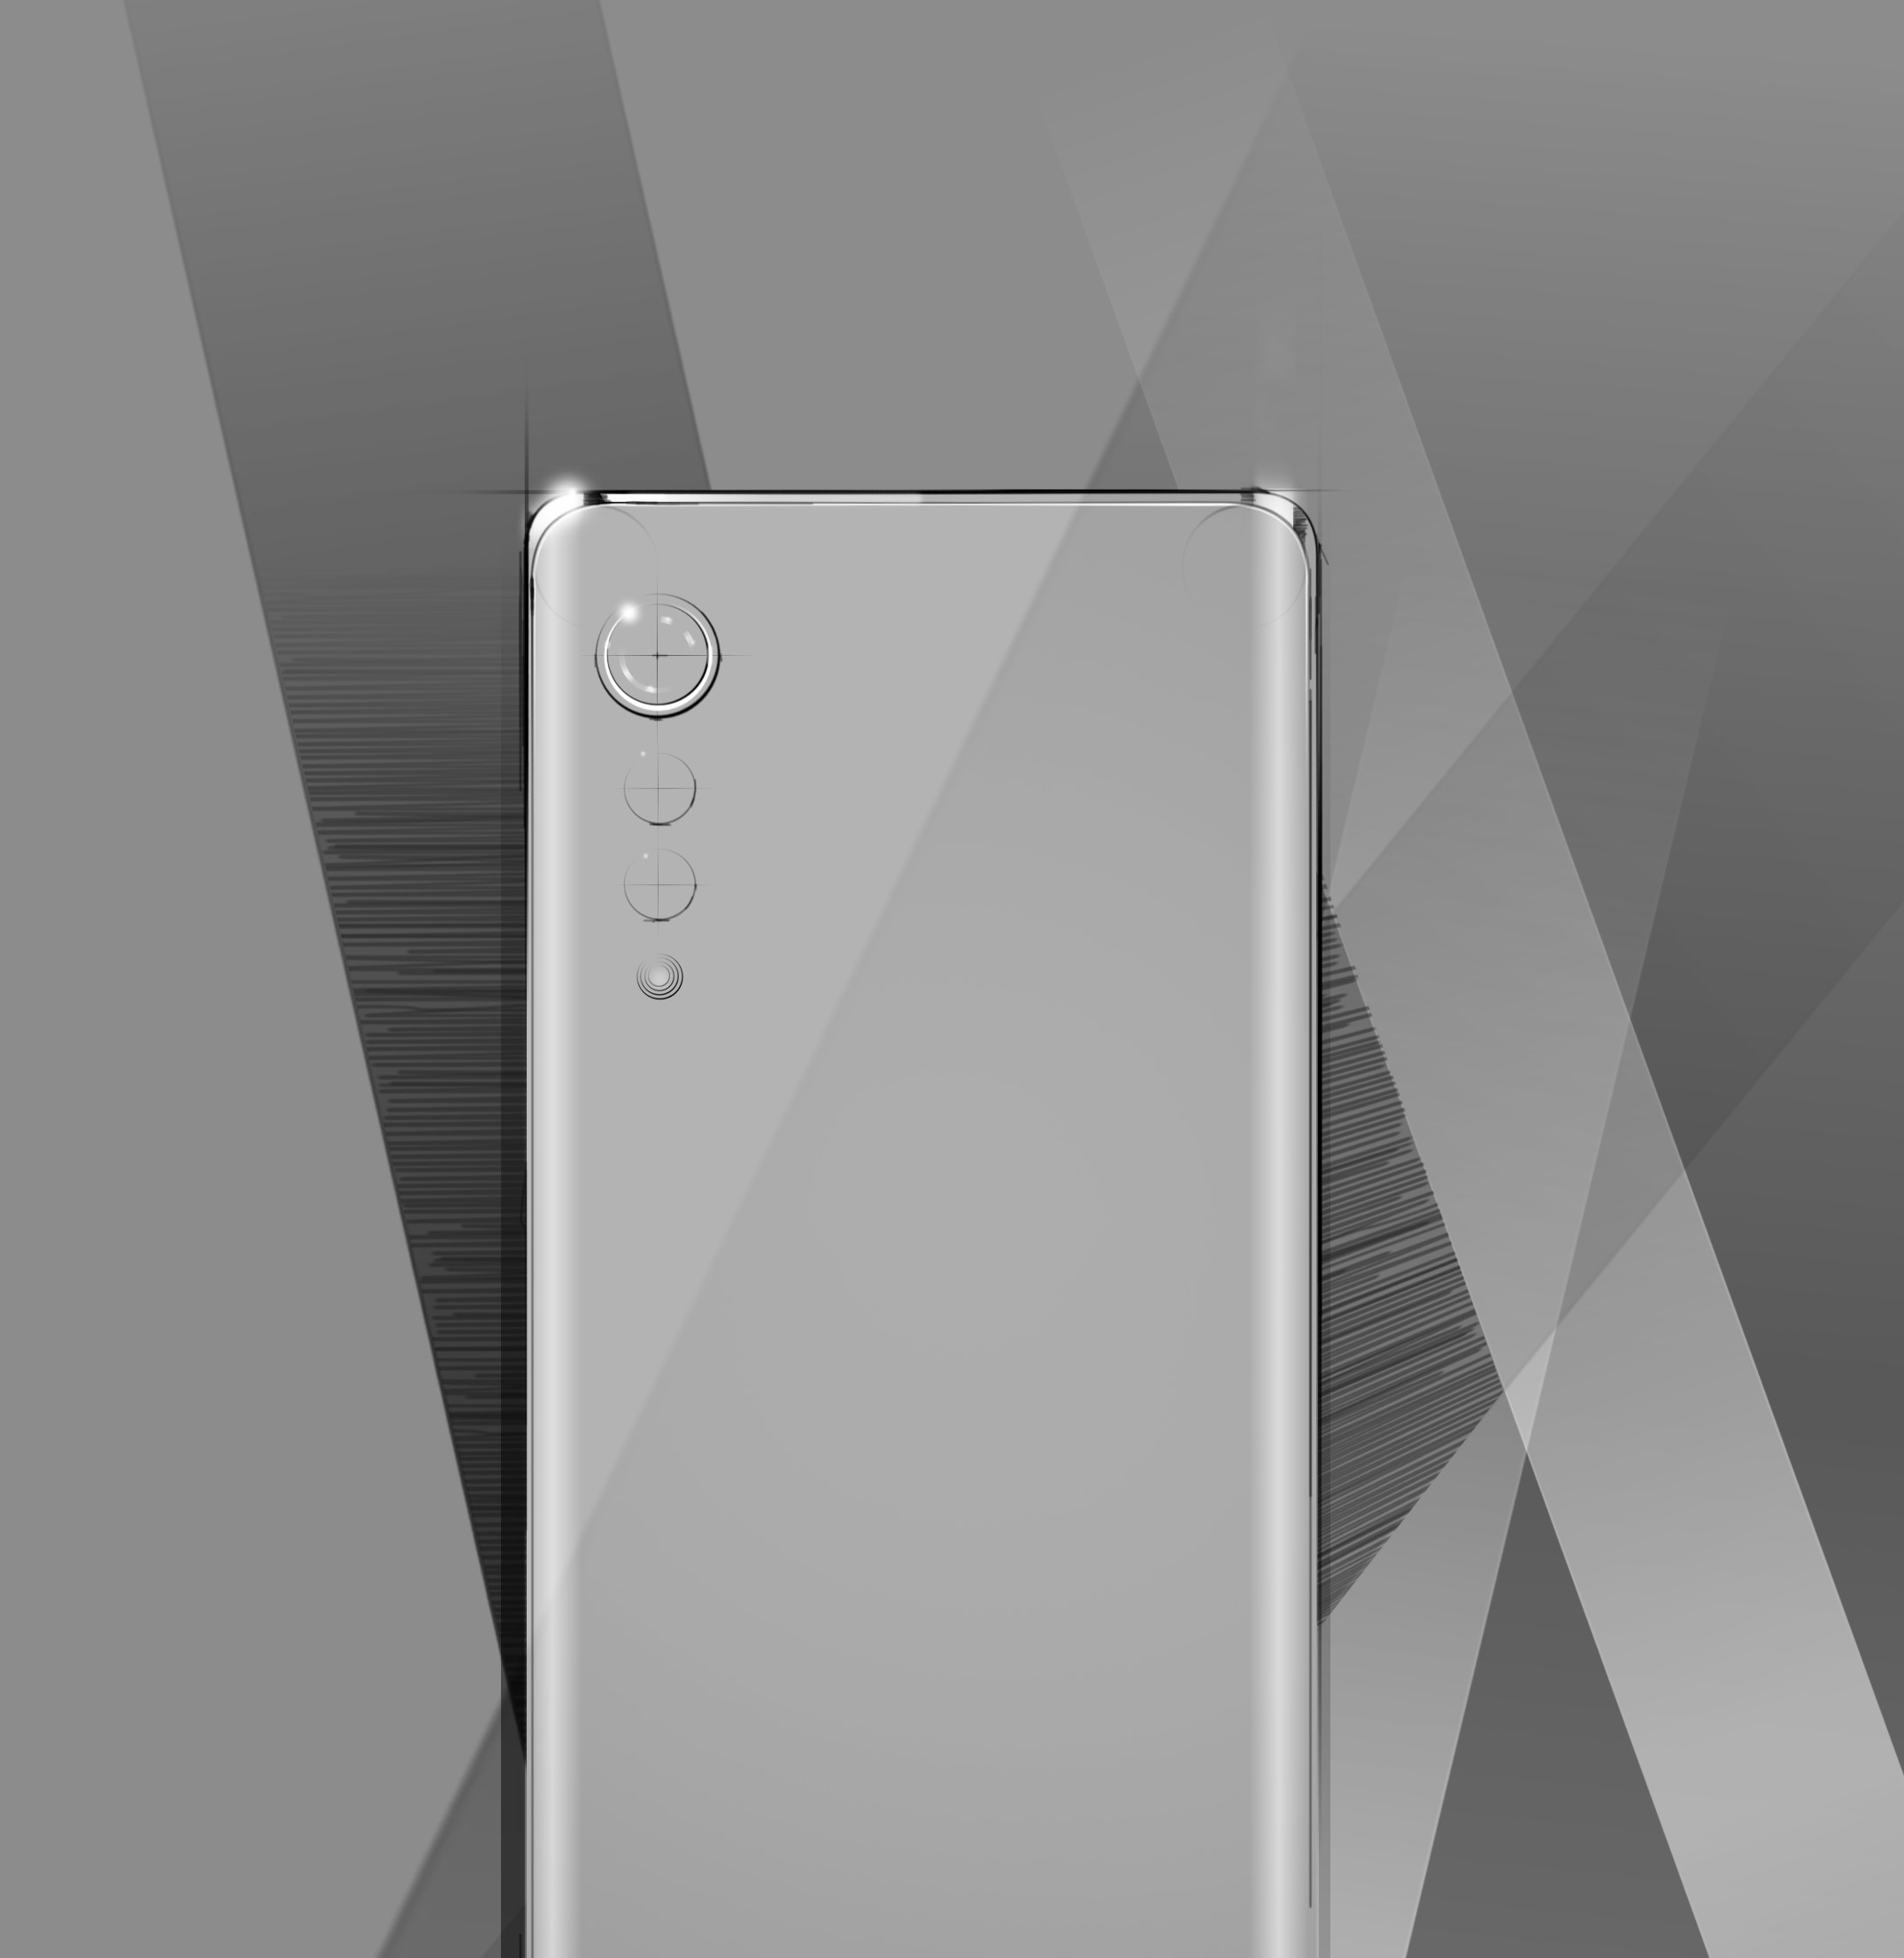 很有可能替代 G 系列产品的 LG 新手机将配用曲屏和三摄设计方案